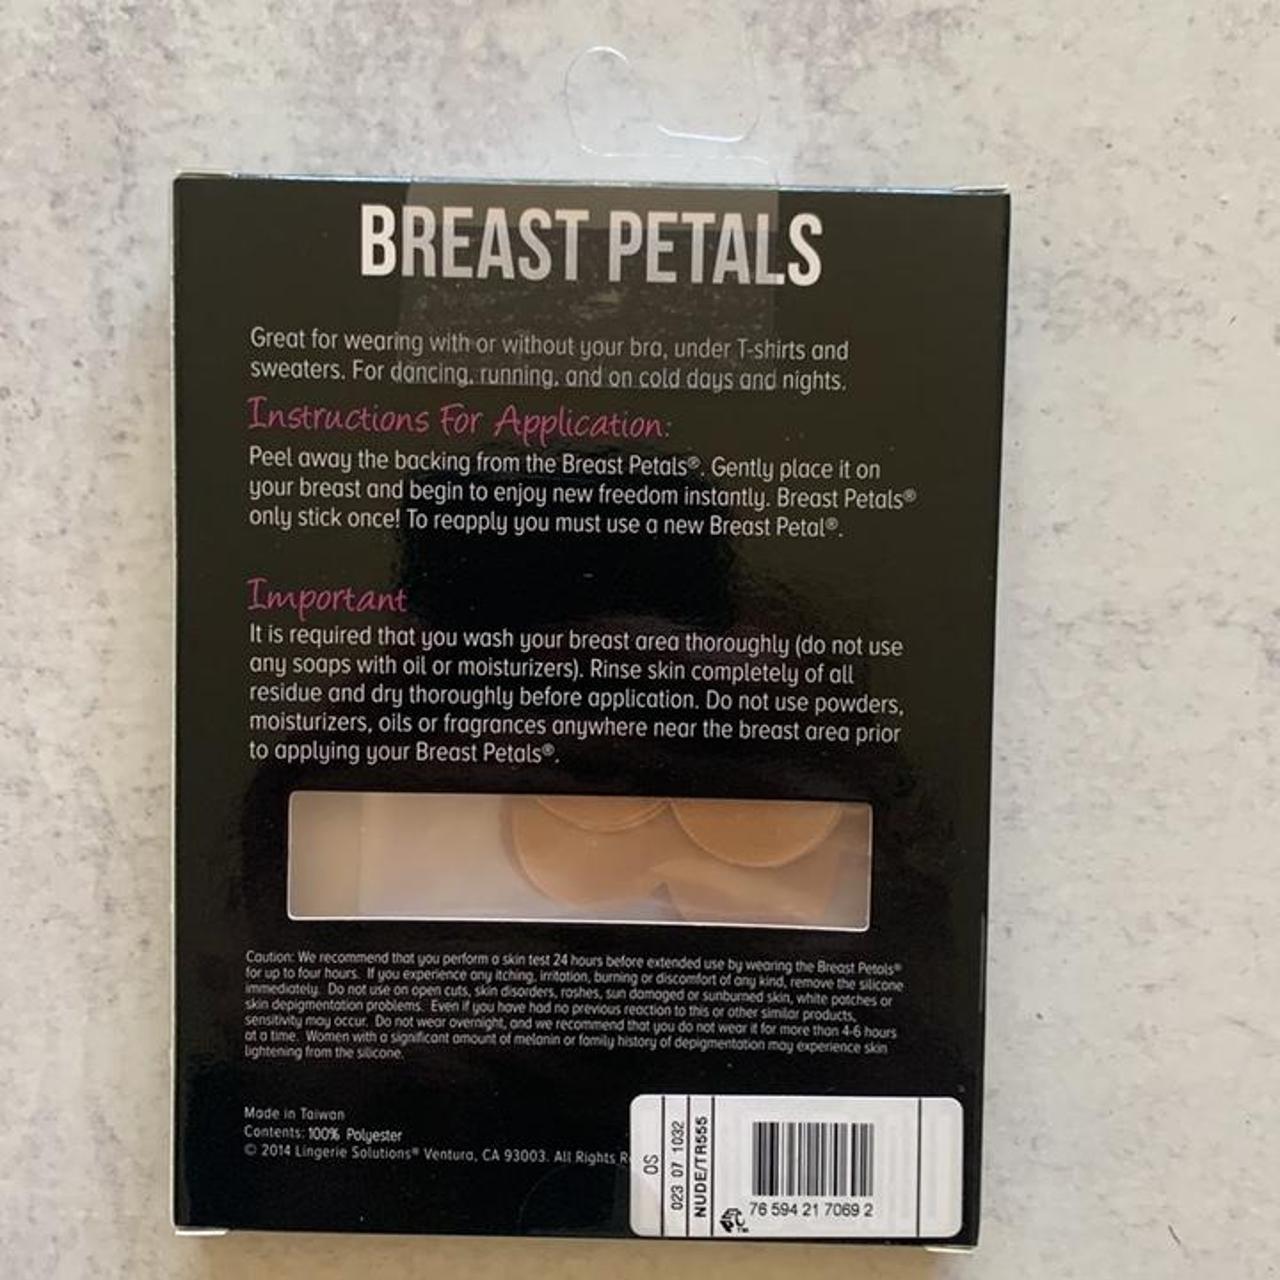 Lingerie Solutions Breast Petals Pasties Nude BRAND - Depop